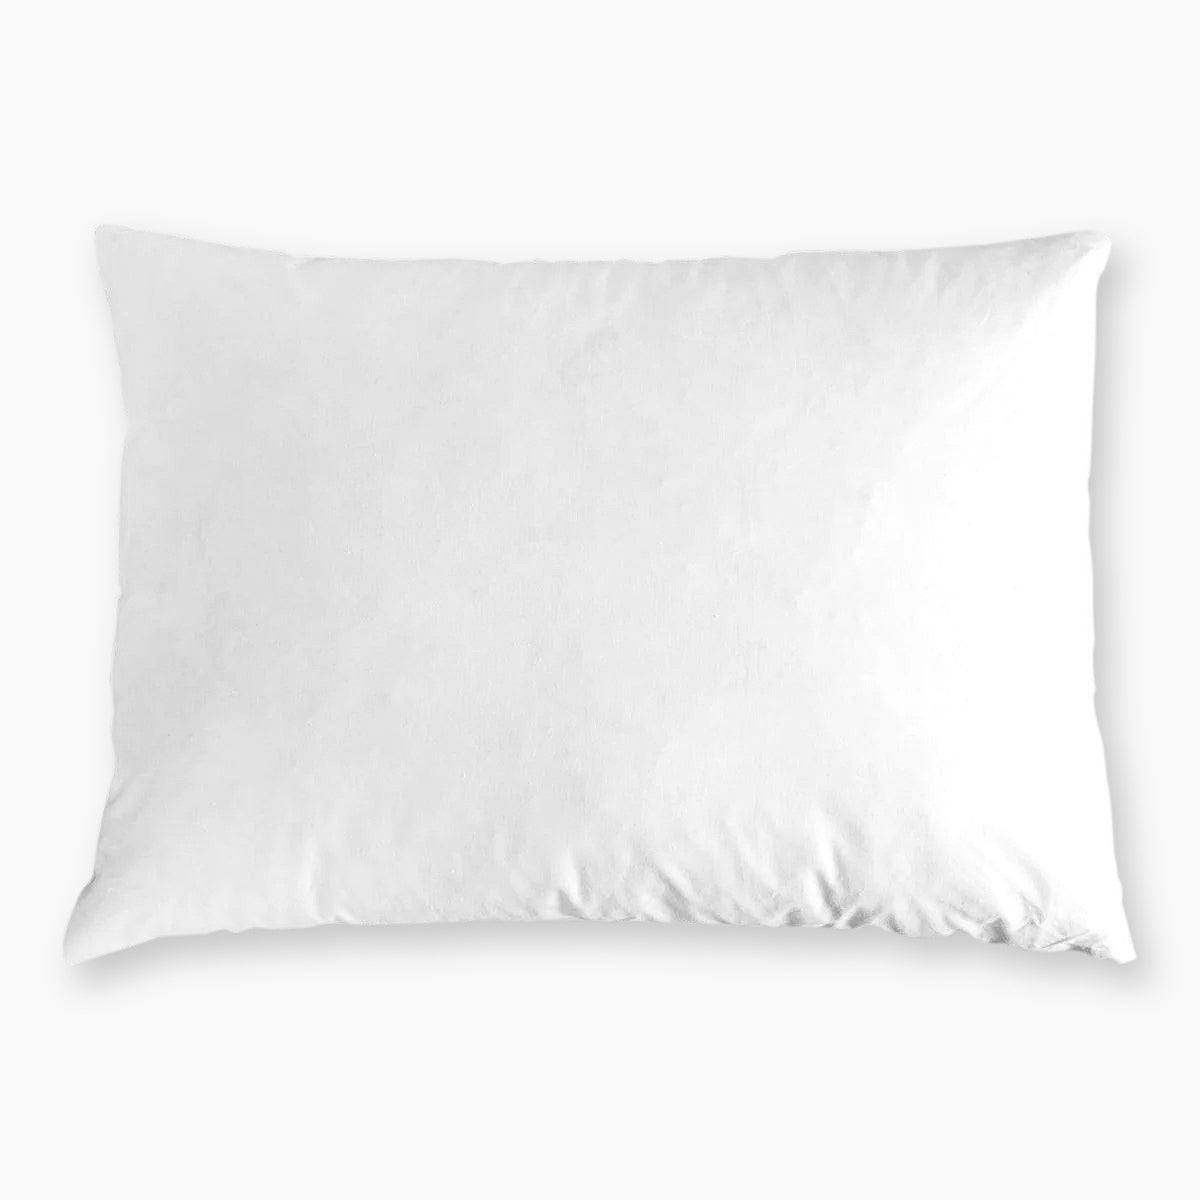 Fairfield 20 x 20 Crafter's Choice Pillow Insert